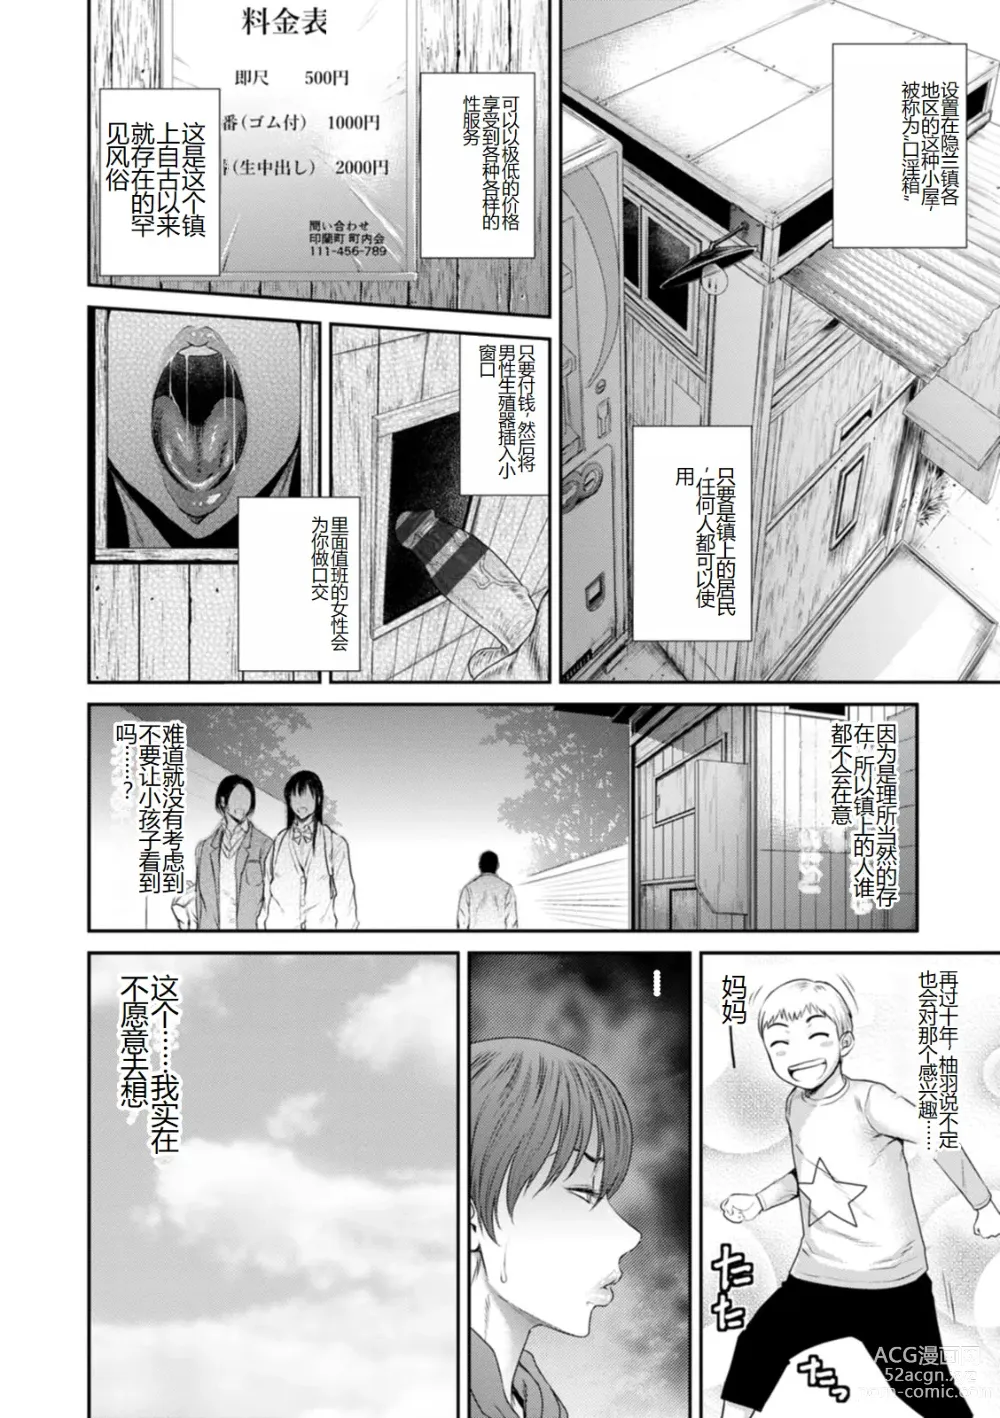 Page 8 of manga Waisetsu Box - Obscene Box